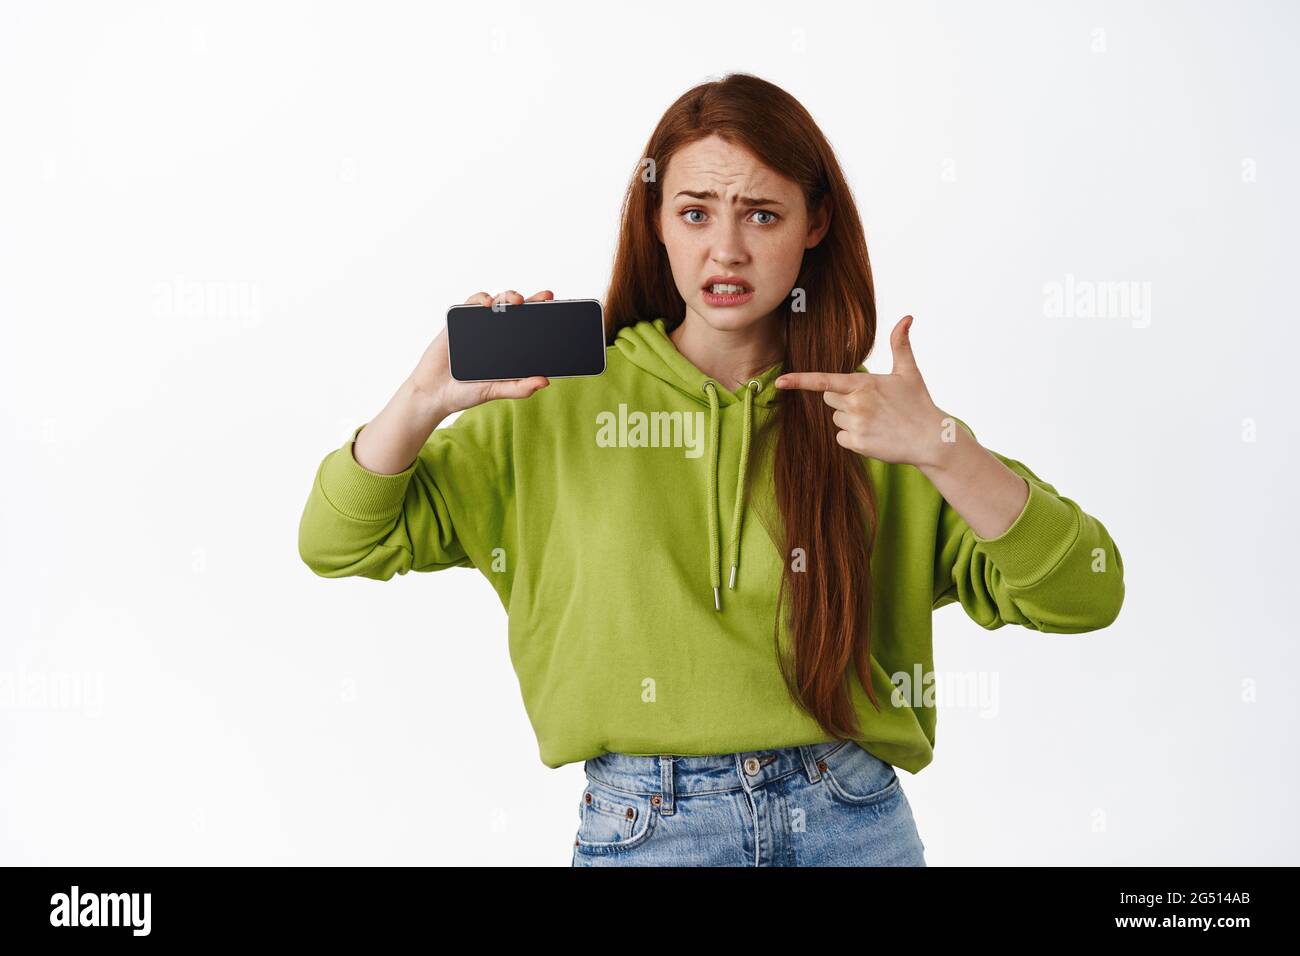 Ritratto di girl punta allo schermo del telefono con la faccia interessata e delusa, avete visto questo, mostrando cattive notizie sul telefono cellulare, sfondo bianco Foto Stock